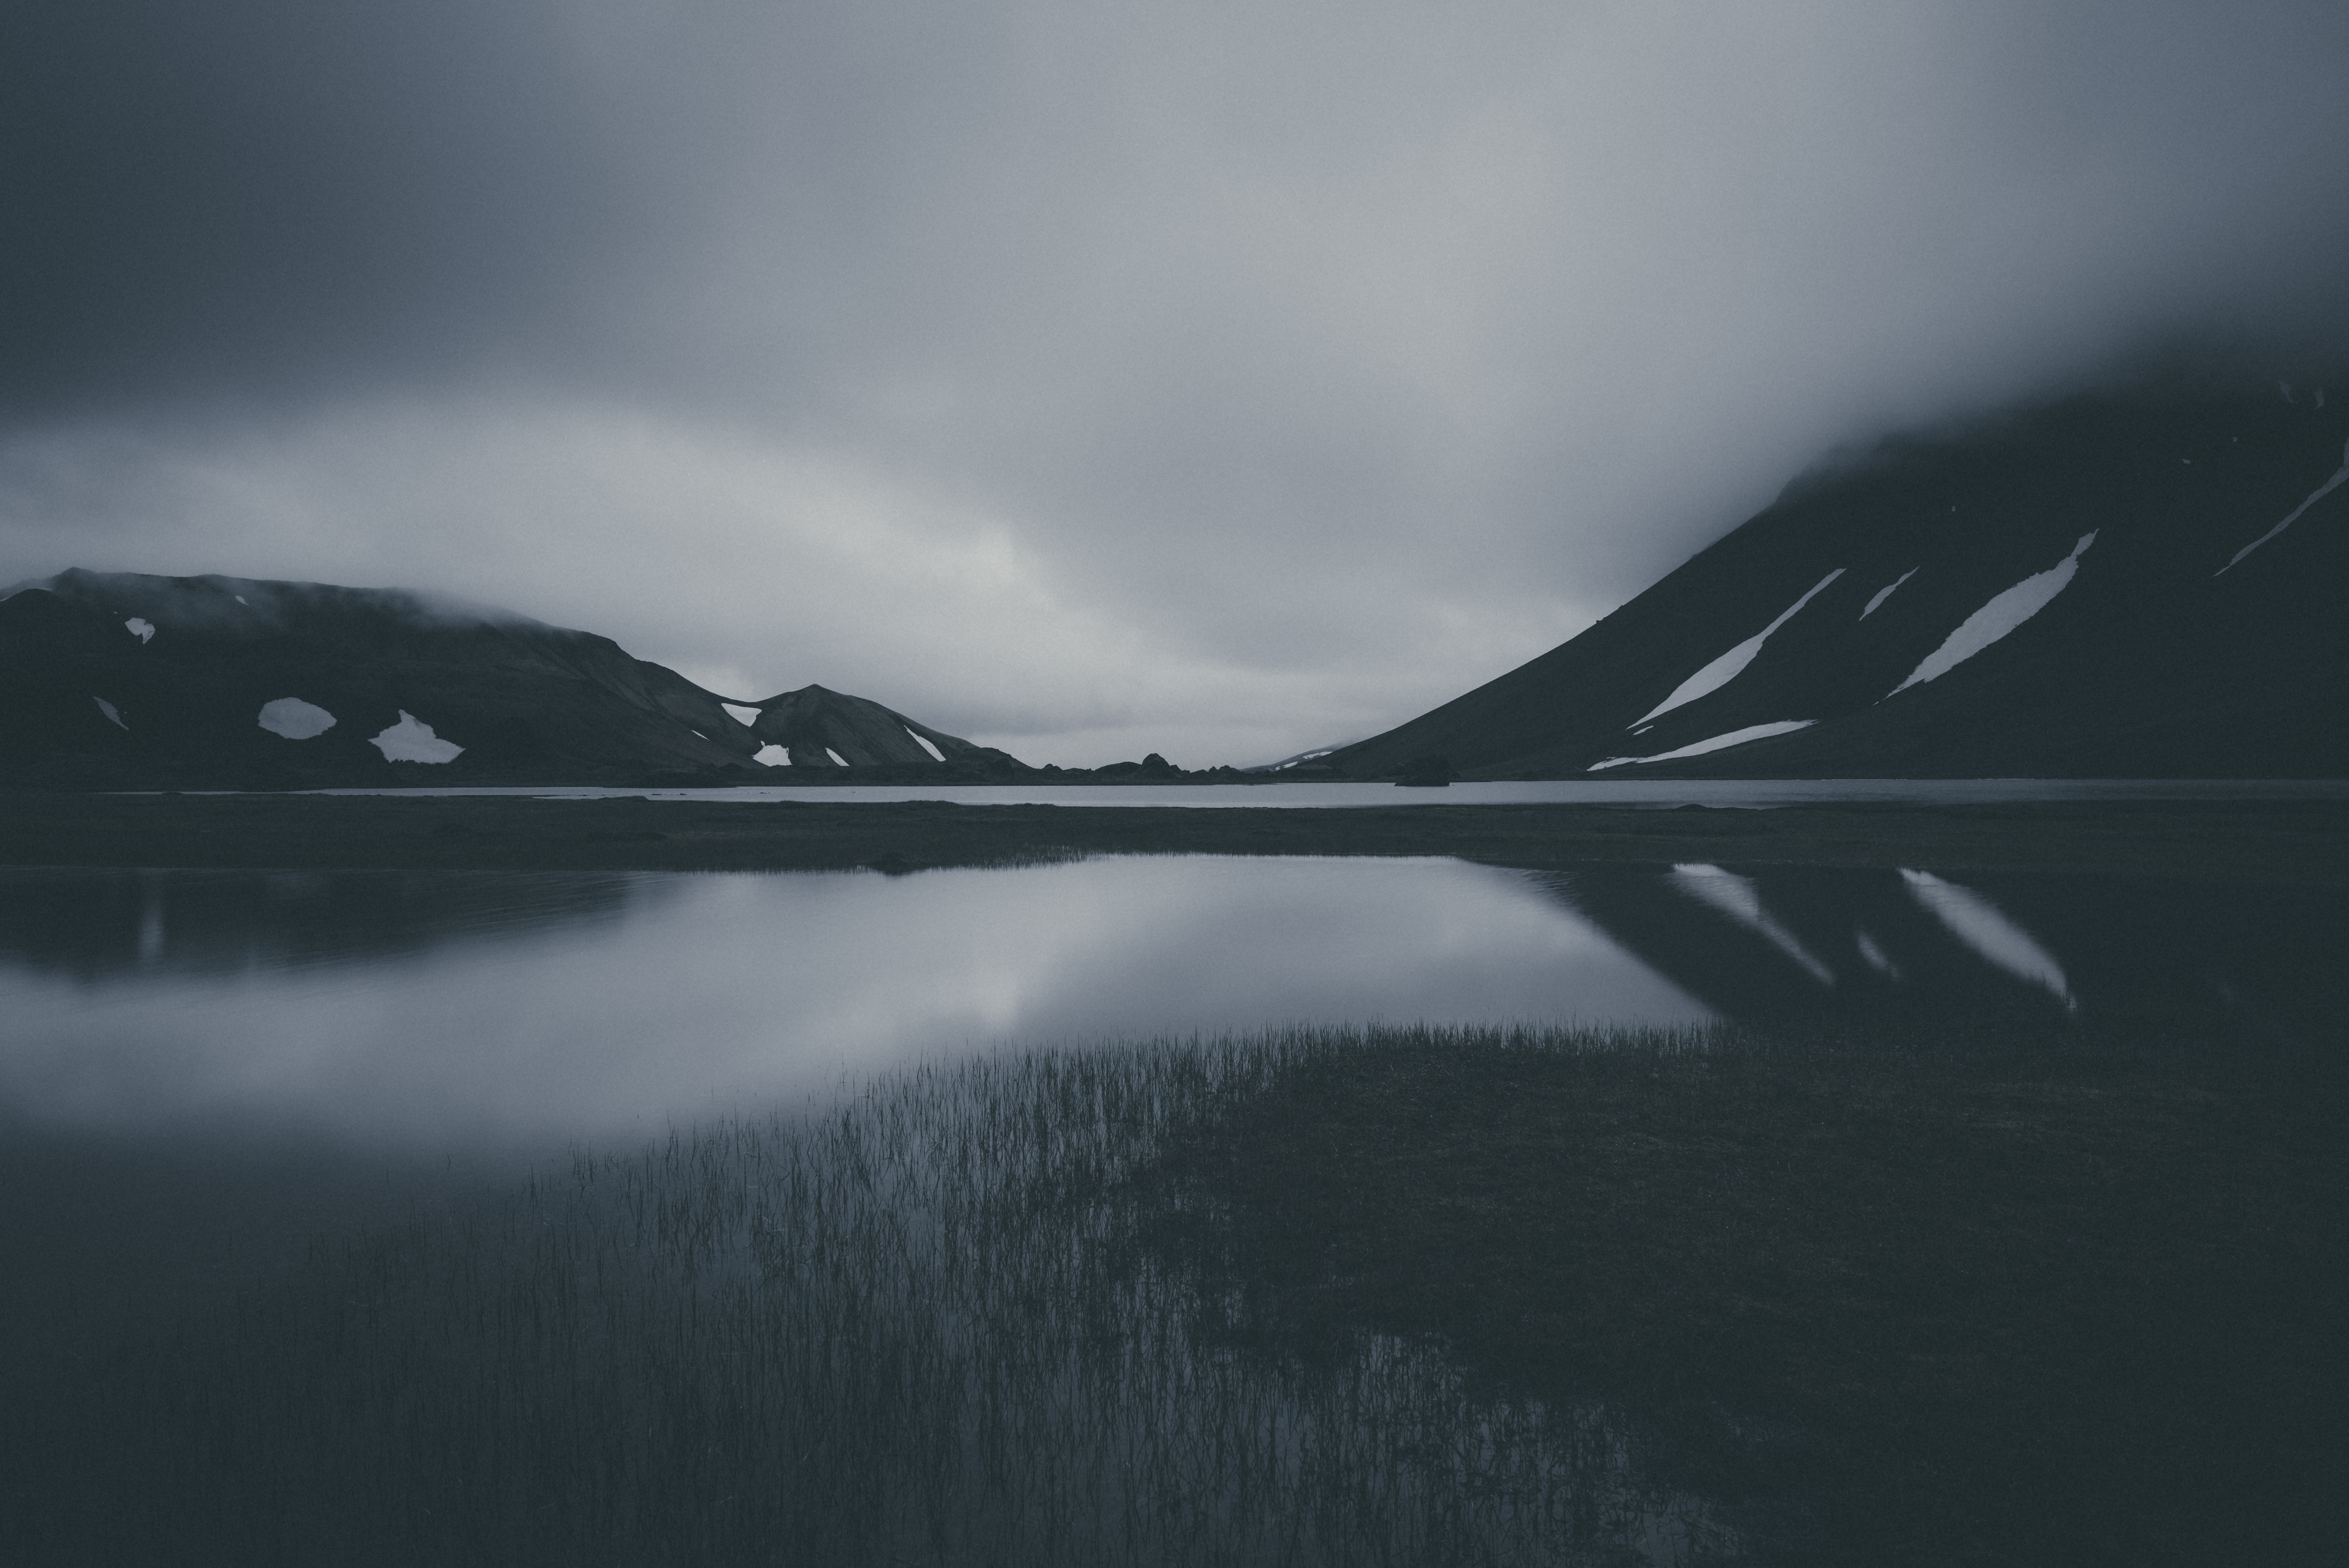 bw, gloomy, dark, mountains, lake, chb, gloomily HD wallpaper